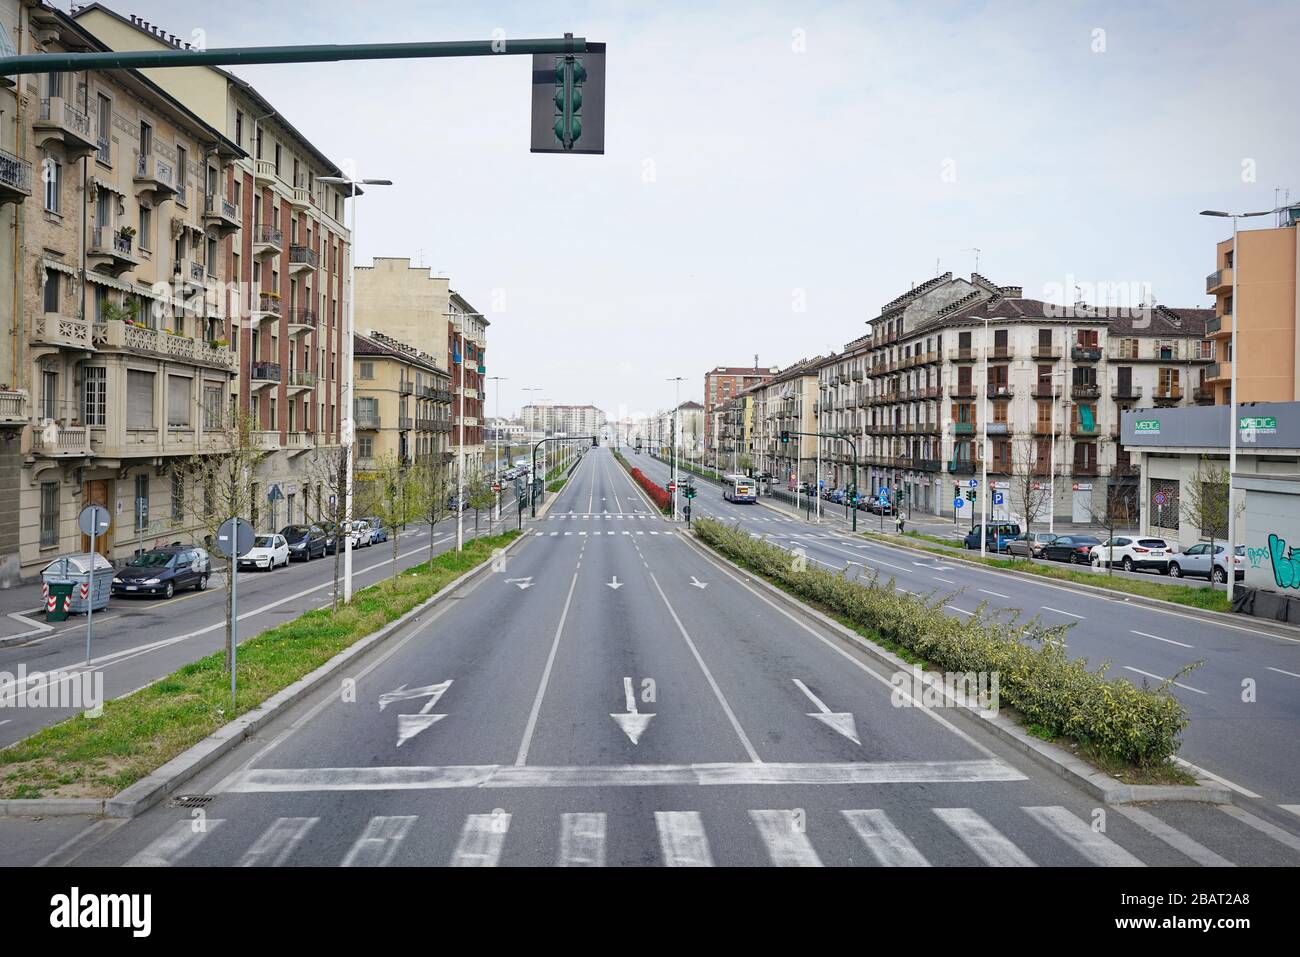 Coronavirus Impact, vuota strada del centro di Torino, Italia - Marzo 2020 Foto Stock